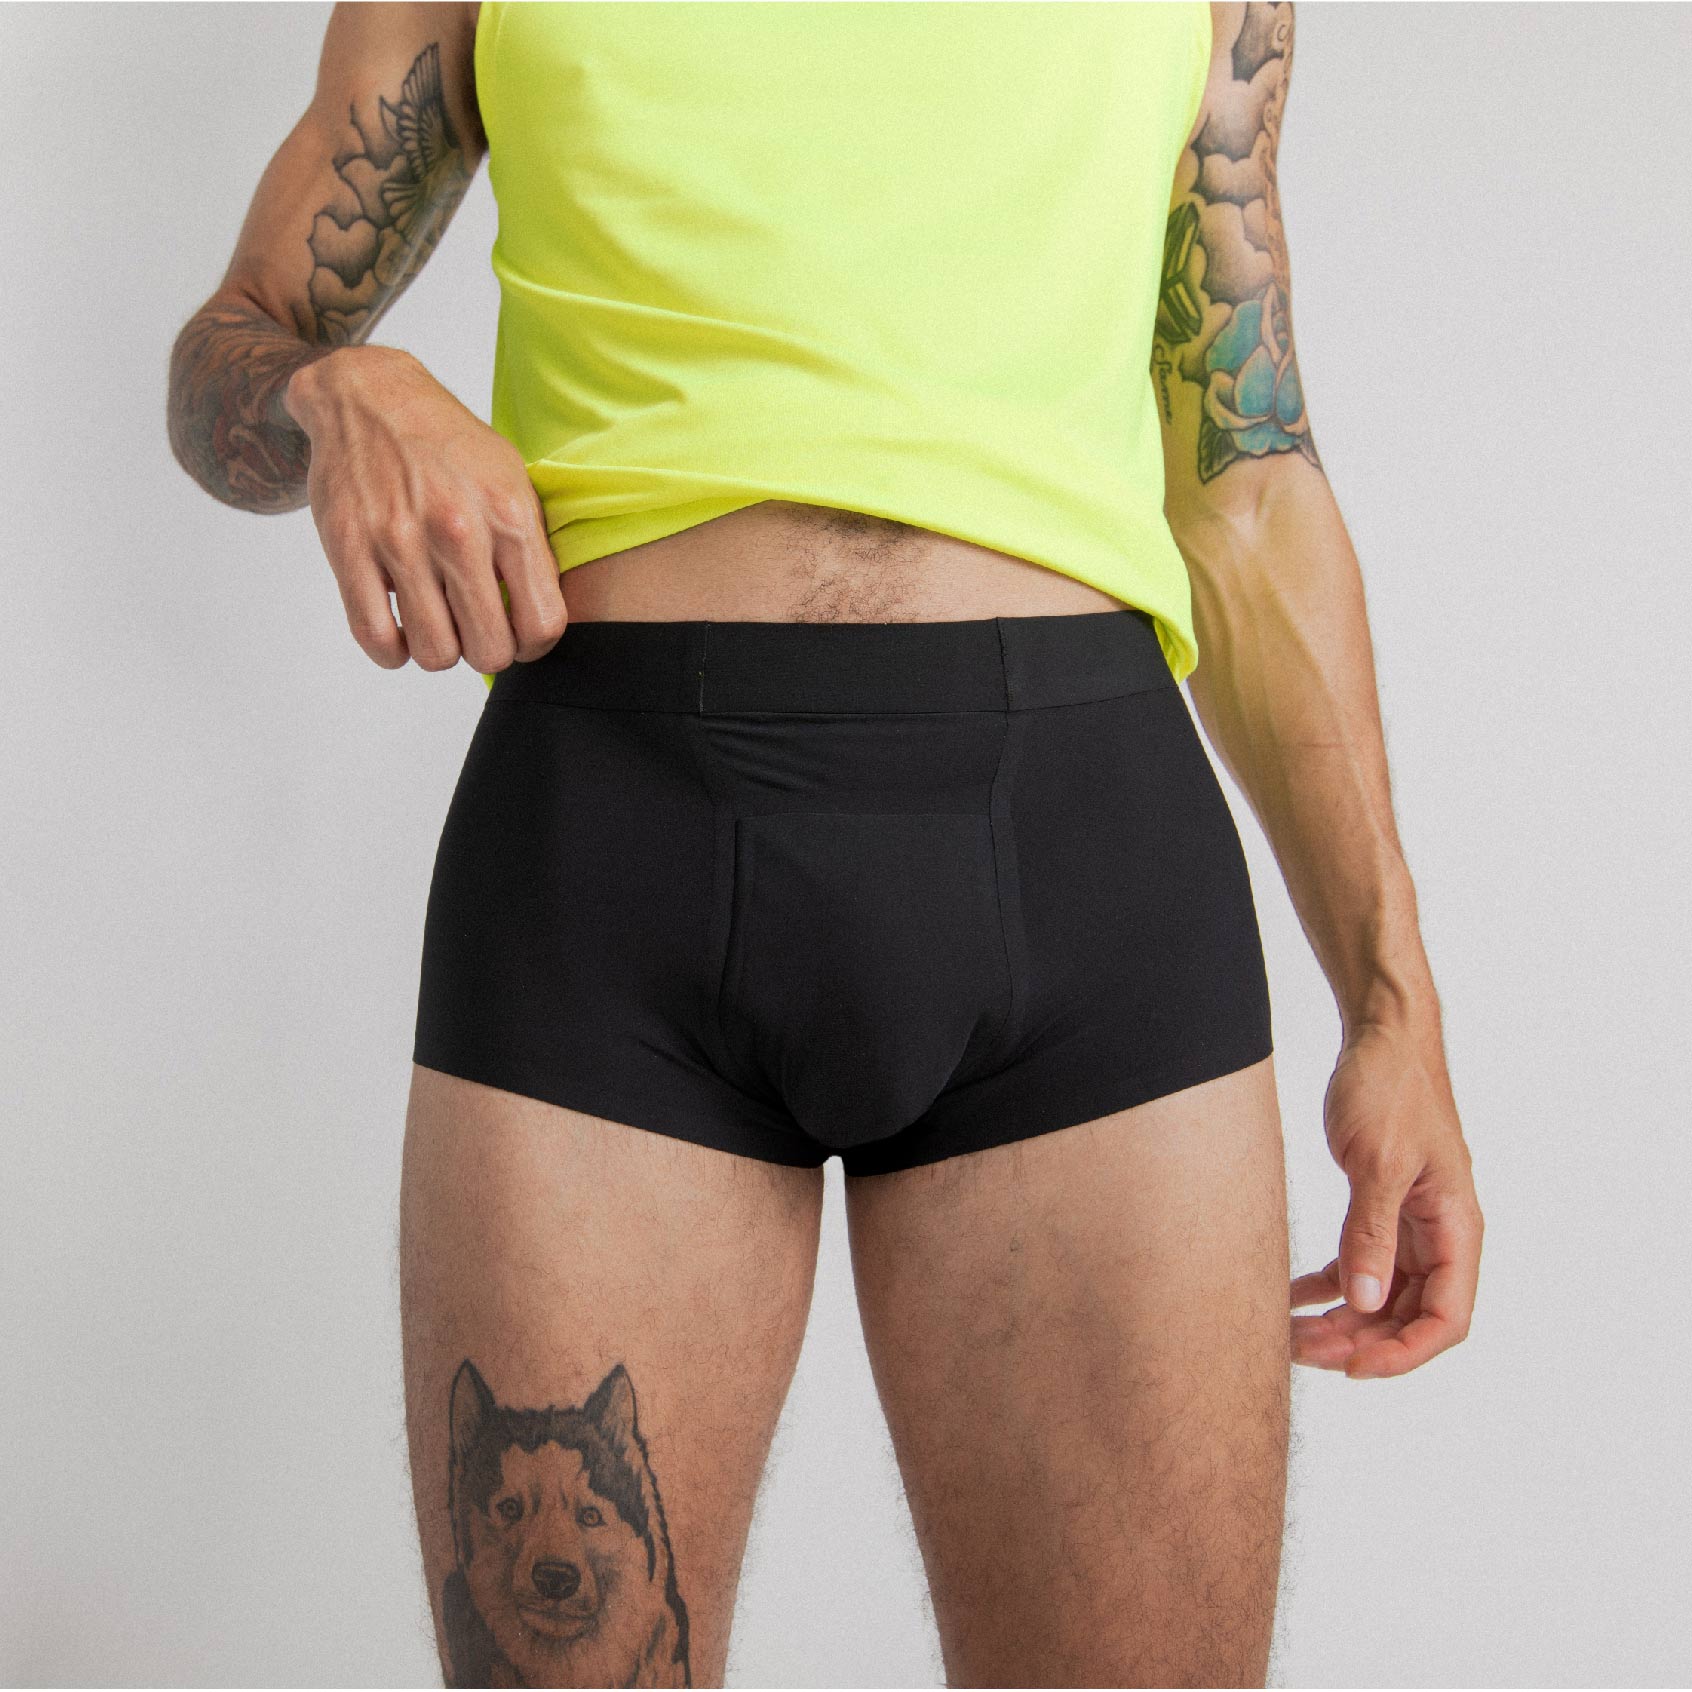 Zorbies Leak Proof Underwear for Men, Stylish & Sleek